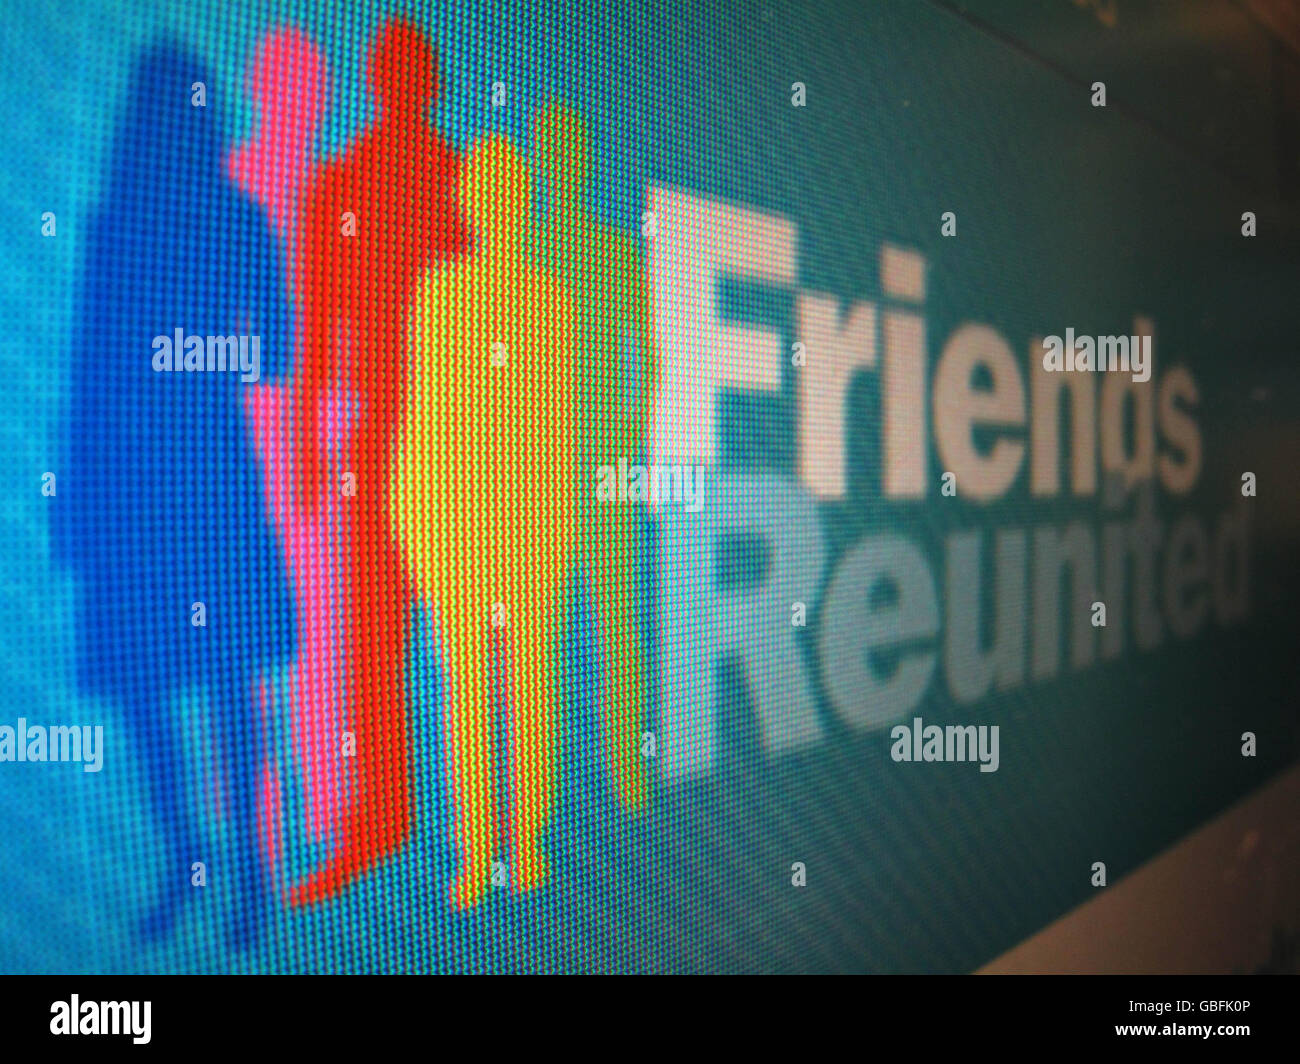 ITV, um 600 Jobs zu erledigen. Ein Bild der Website „Friends Reunited“, das der Sender ITV zu verkaufen angab. Stockfoto